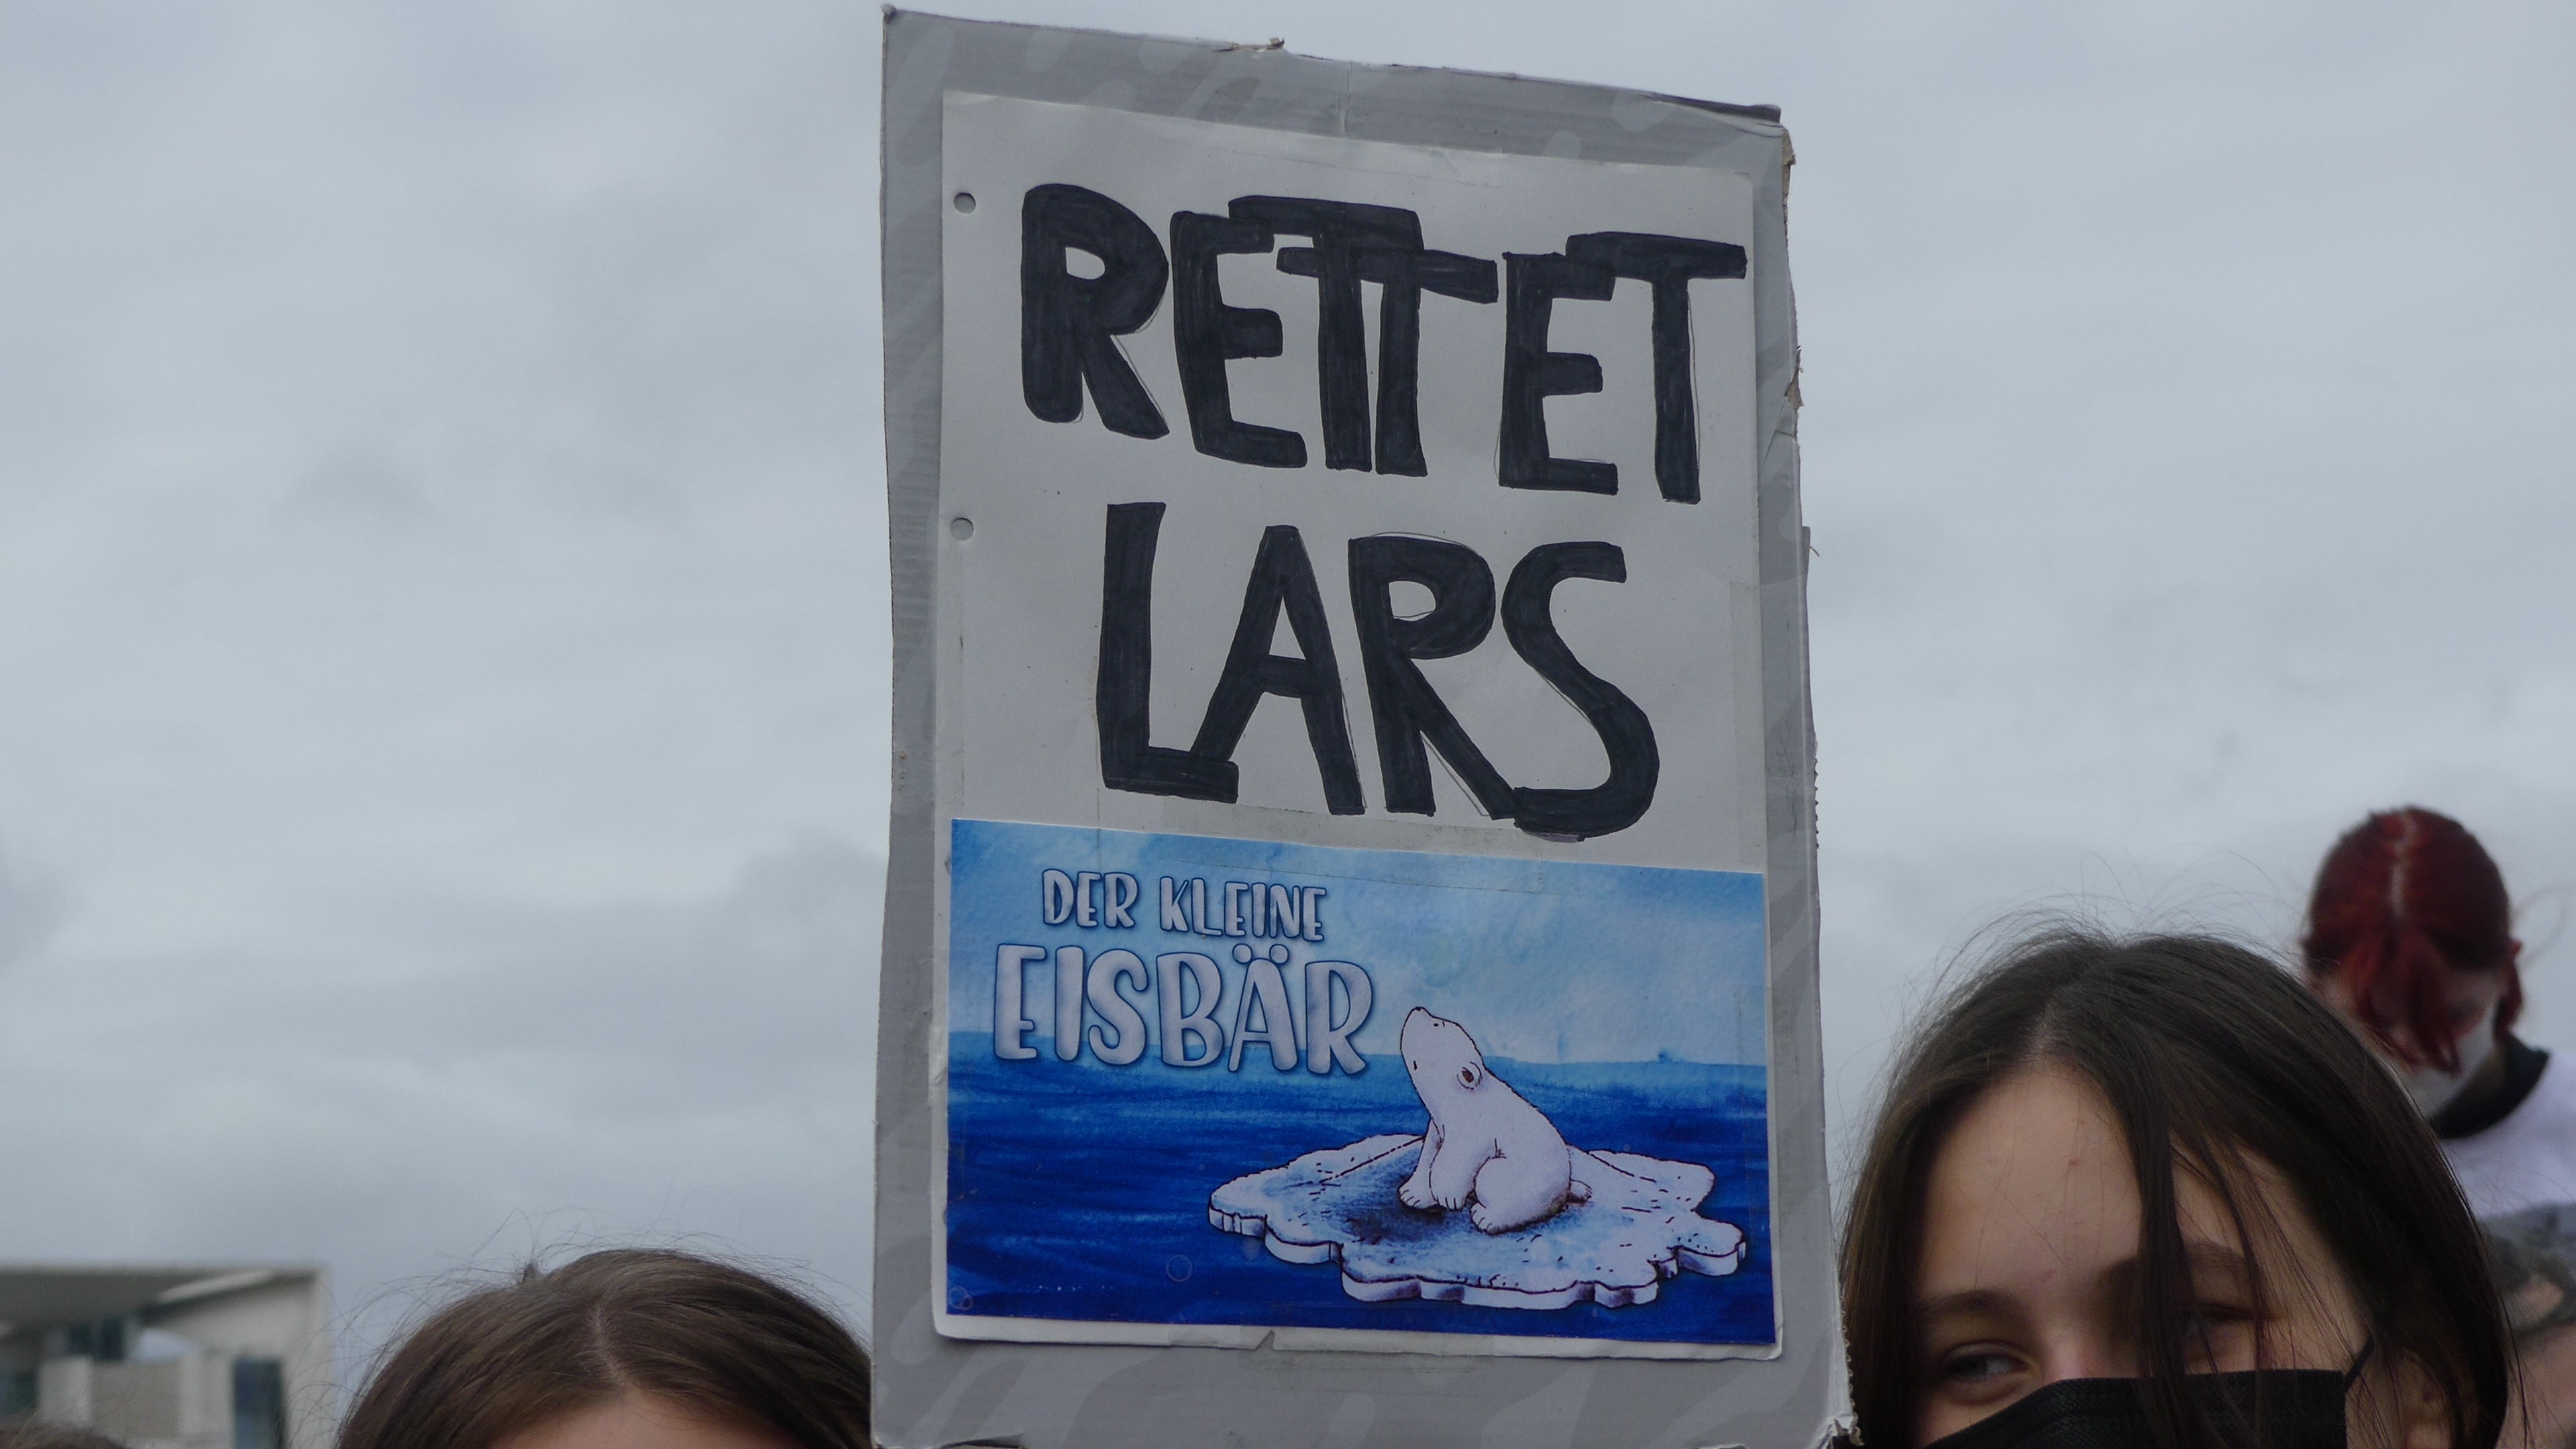 Ein Demonstrationsschild auf dem "Rettet Lars den kleinen Eisbär" steht 